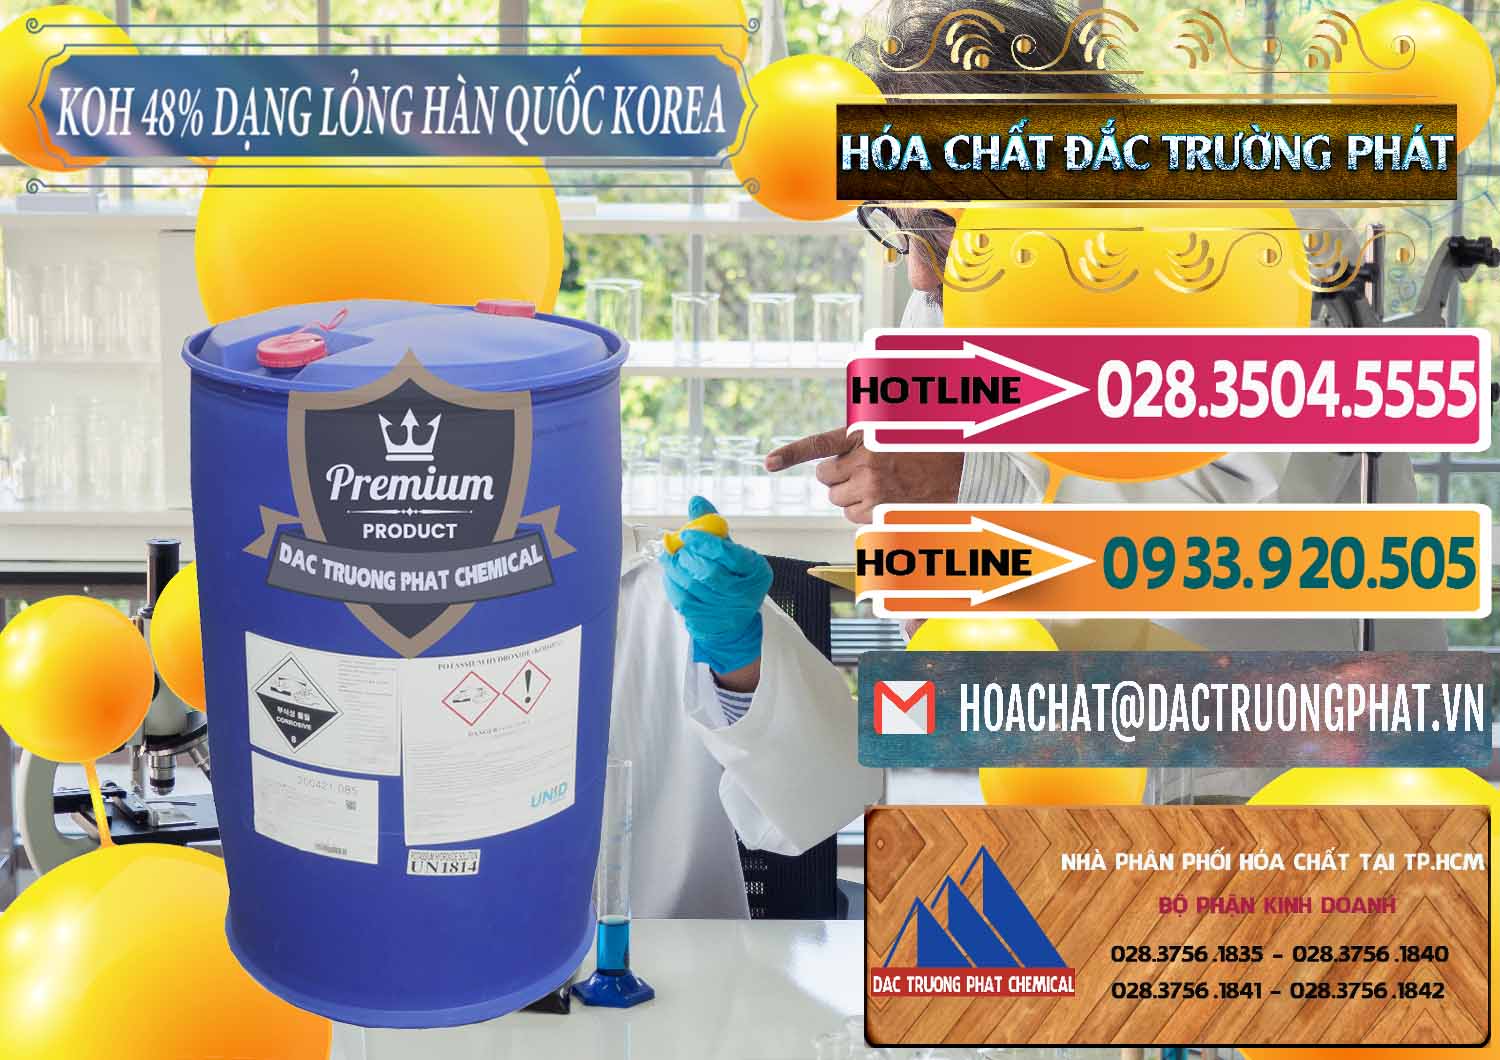 Cung ứng _ bán KOH Dạng Nước – Potassium Hydroxide Lỏng 48% Hàn Quốc Korea - 0293 - Đơn vị bán và cung cấp hóa chất tại TP.HCM - dactruongphat.vn